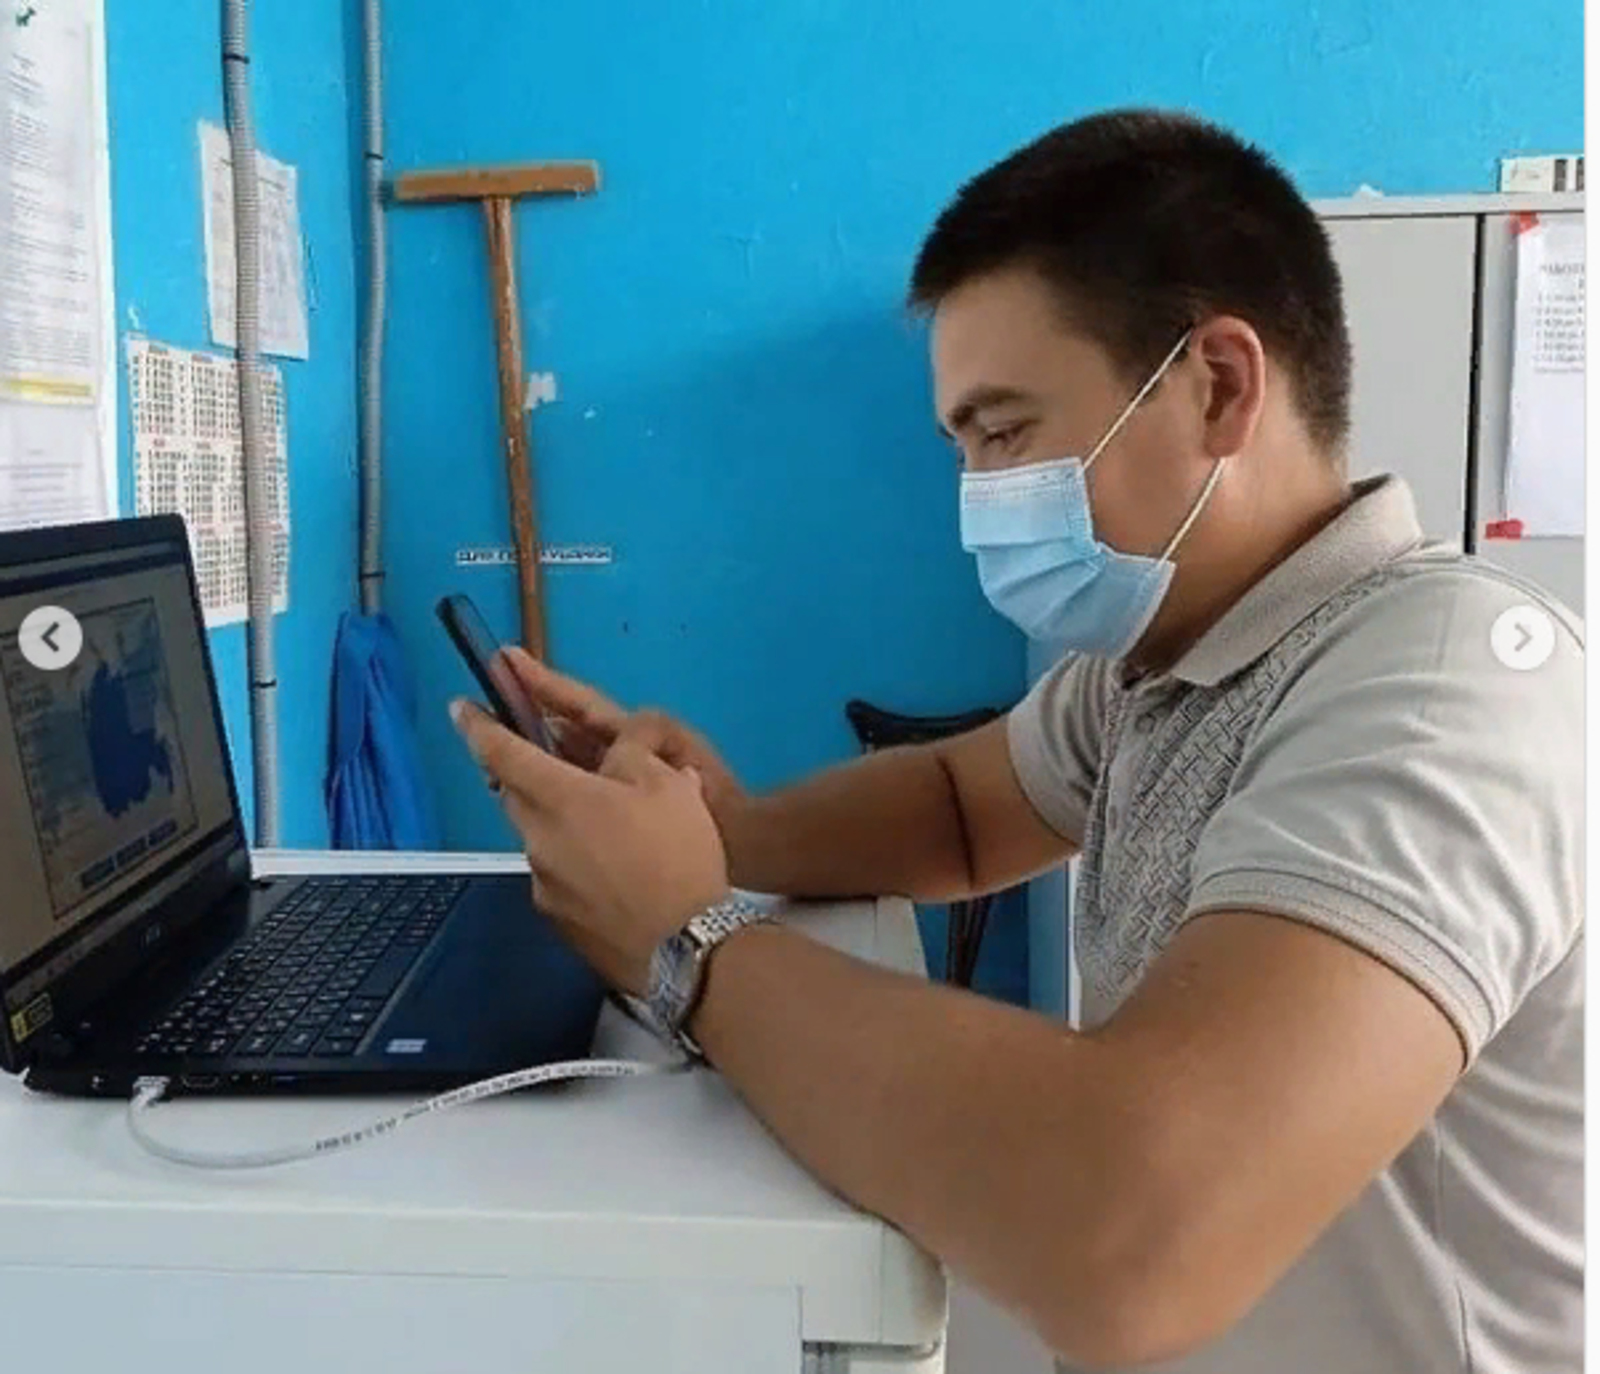 Хорошая новость: проведен интернет в деревнях Благоварского района